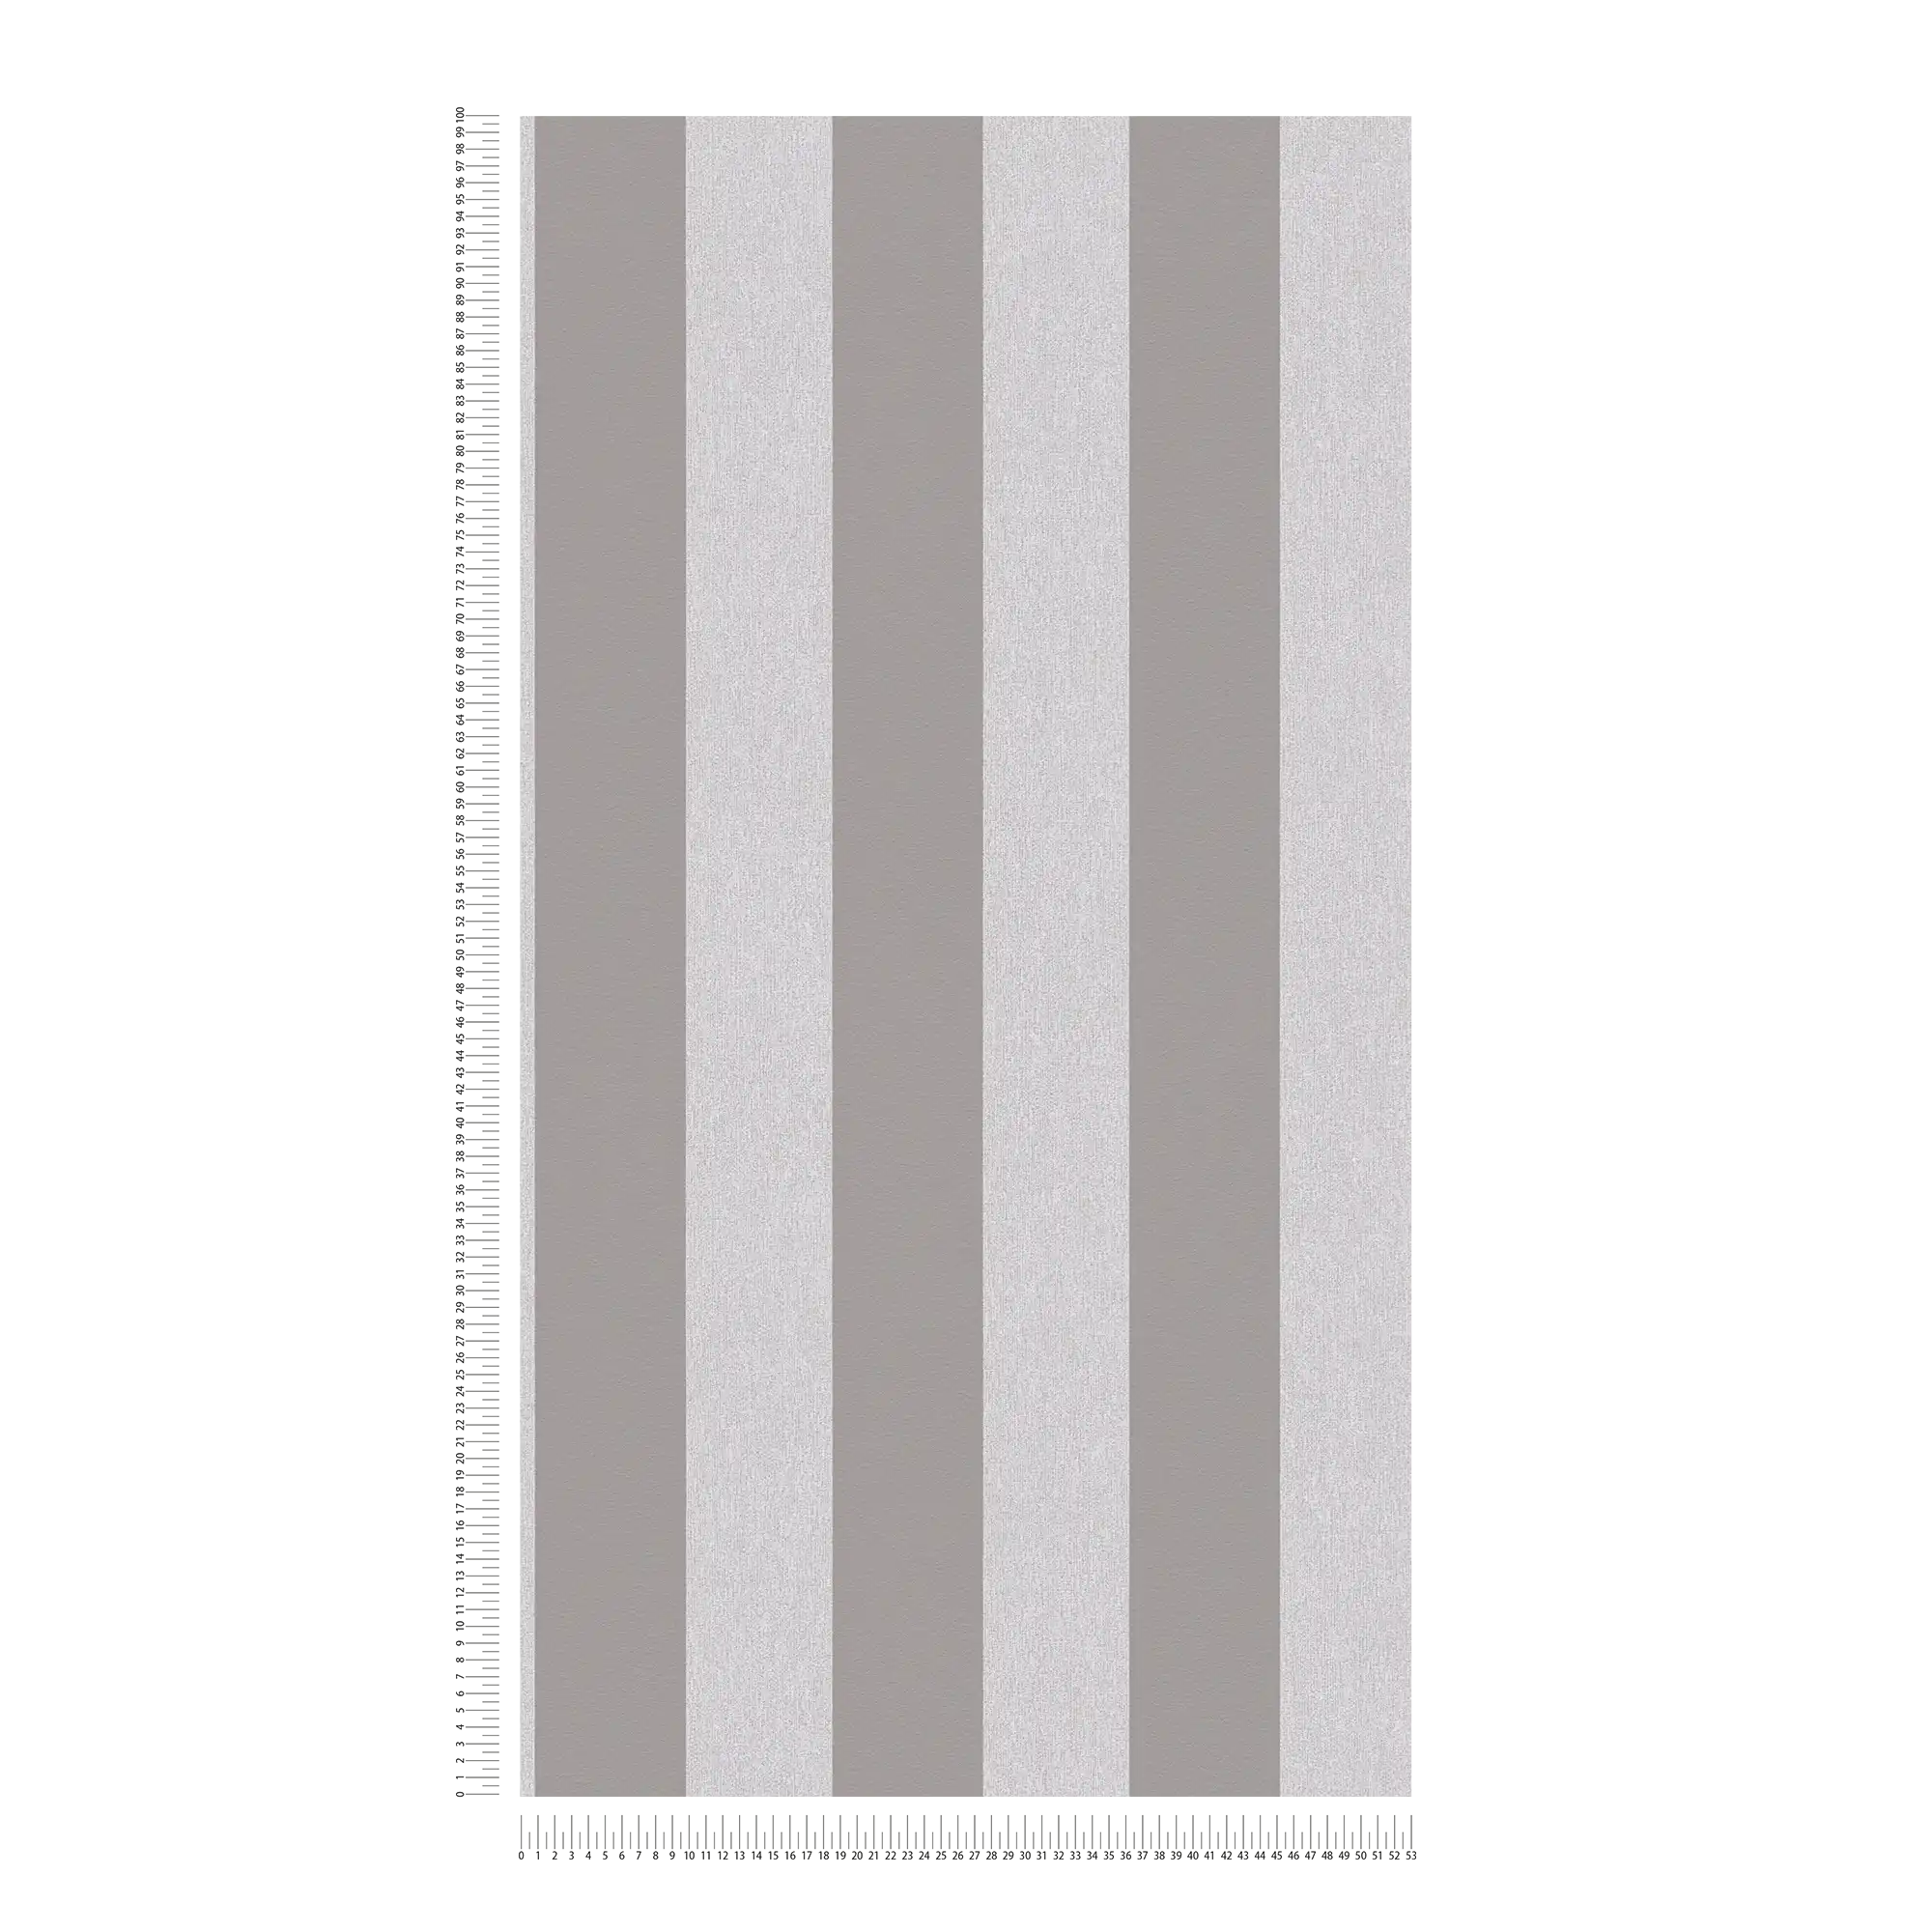             Papel pintado con textura de óptica y rayas - gris, gris claro
        